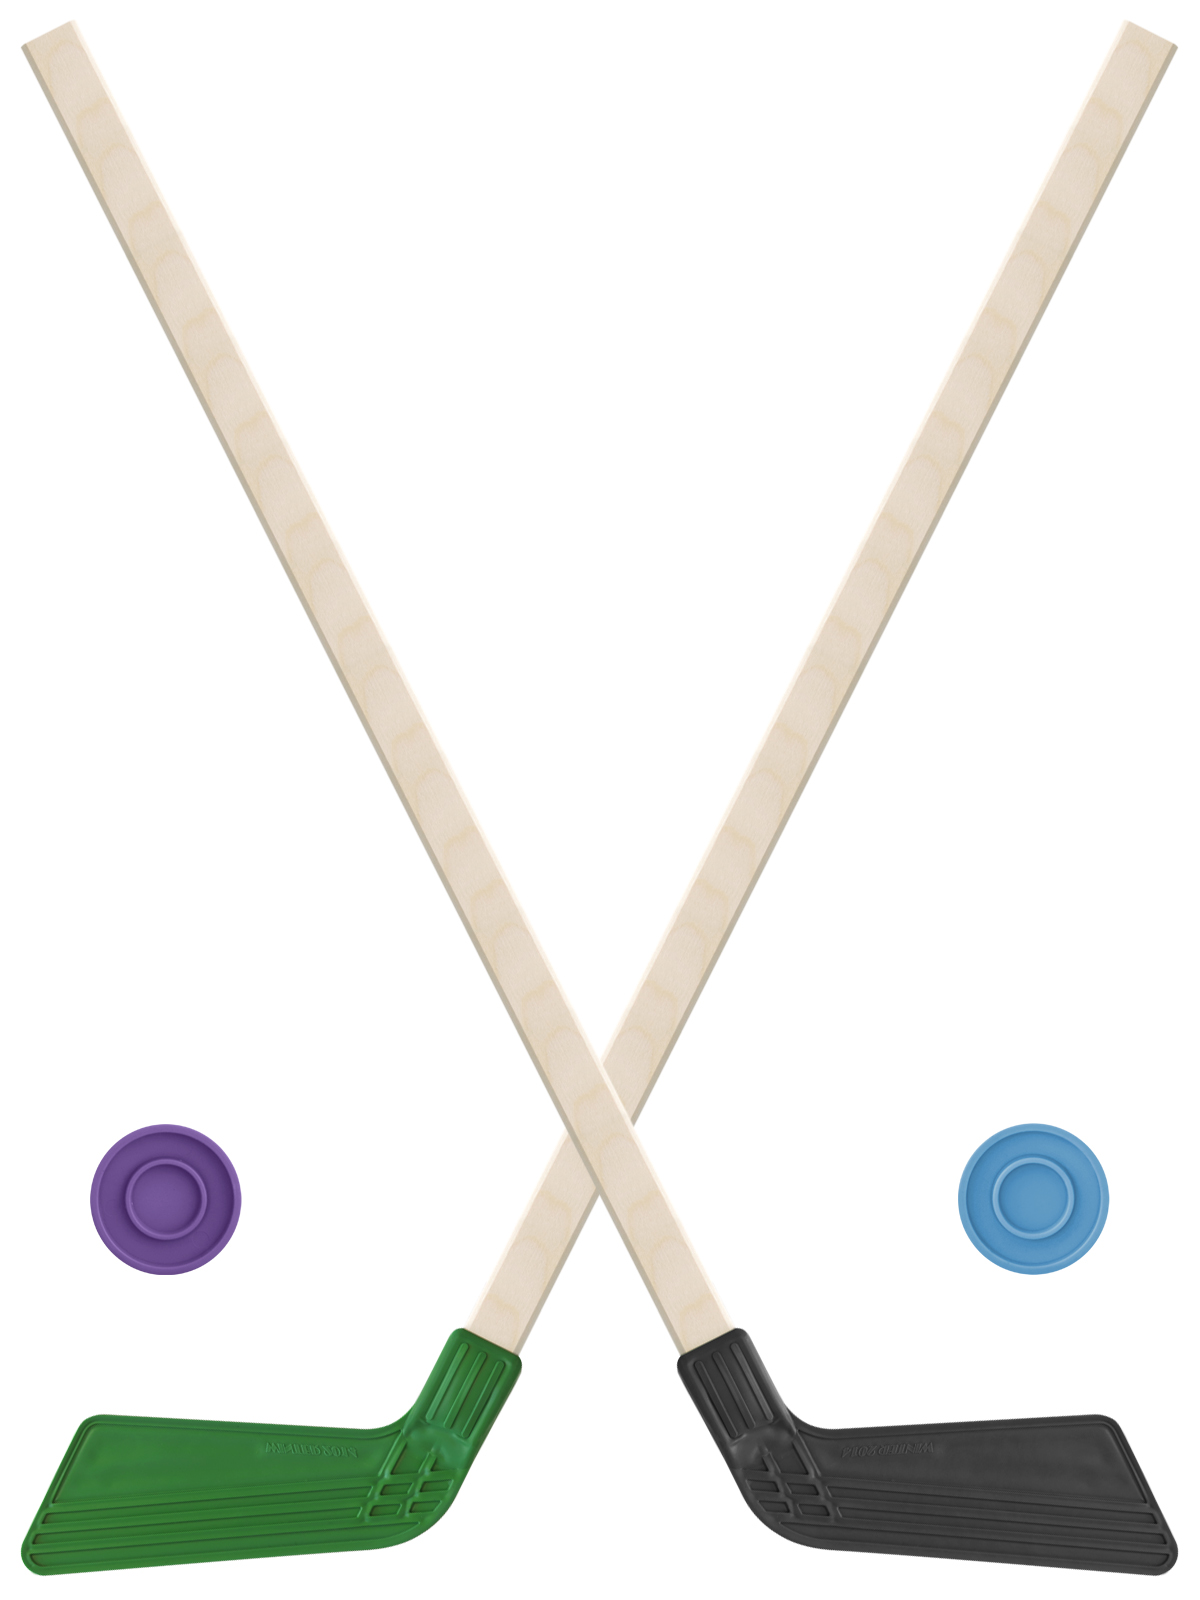 Детский хоккейный набор Задира-плюс клюшка хоккейная детская 80см (зел и черн) 2шт +2шайбы клюшка флорбольная acito medi 35 yellow 85 round прямой